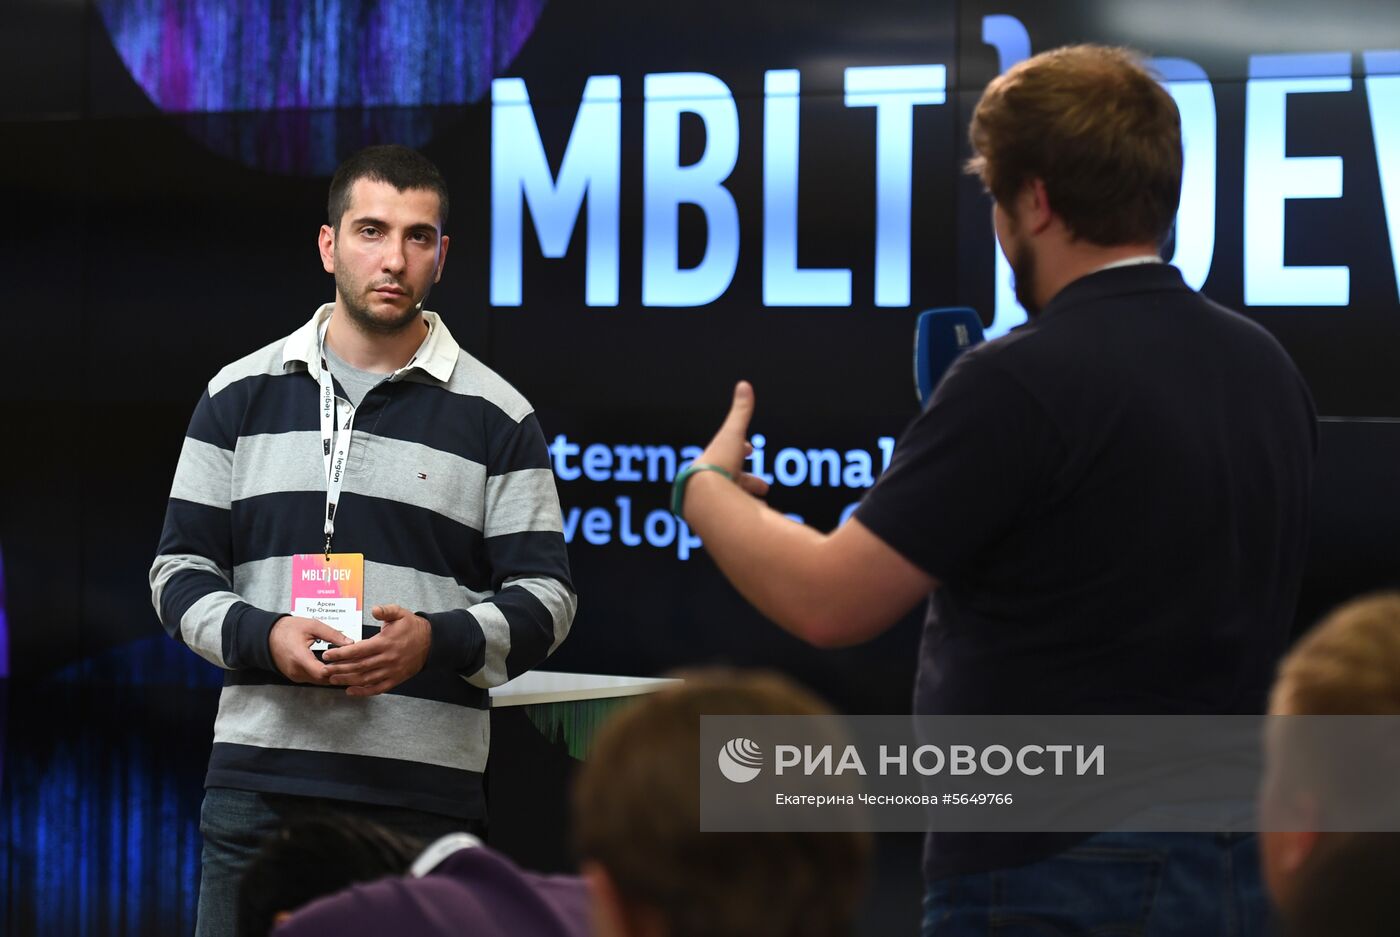 V Международная конференция мобильных разработчиков MBLT DEV 2018